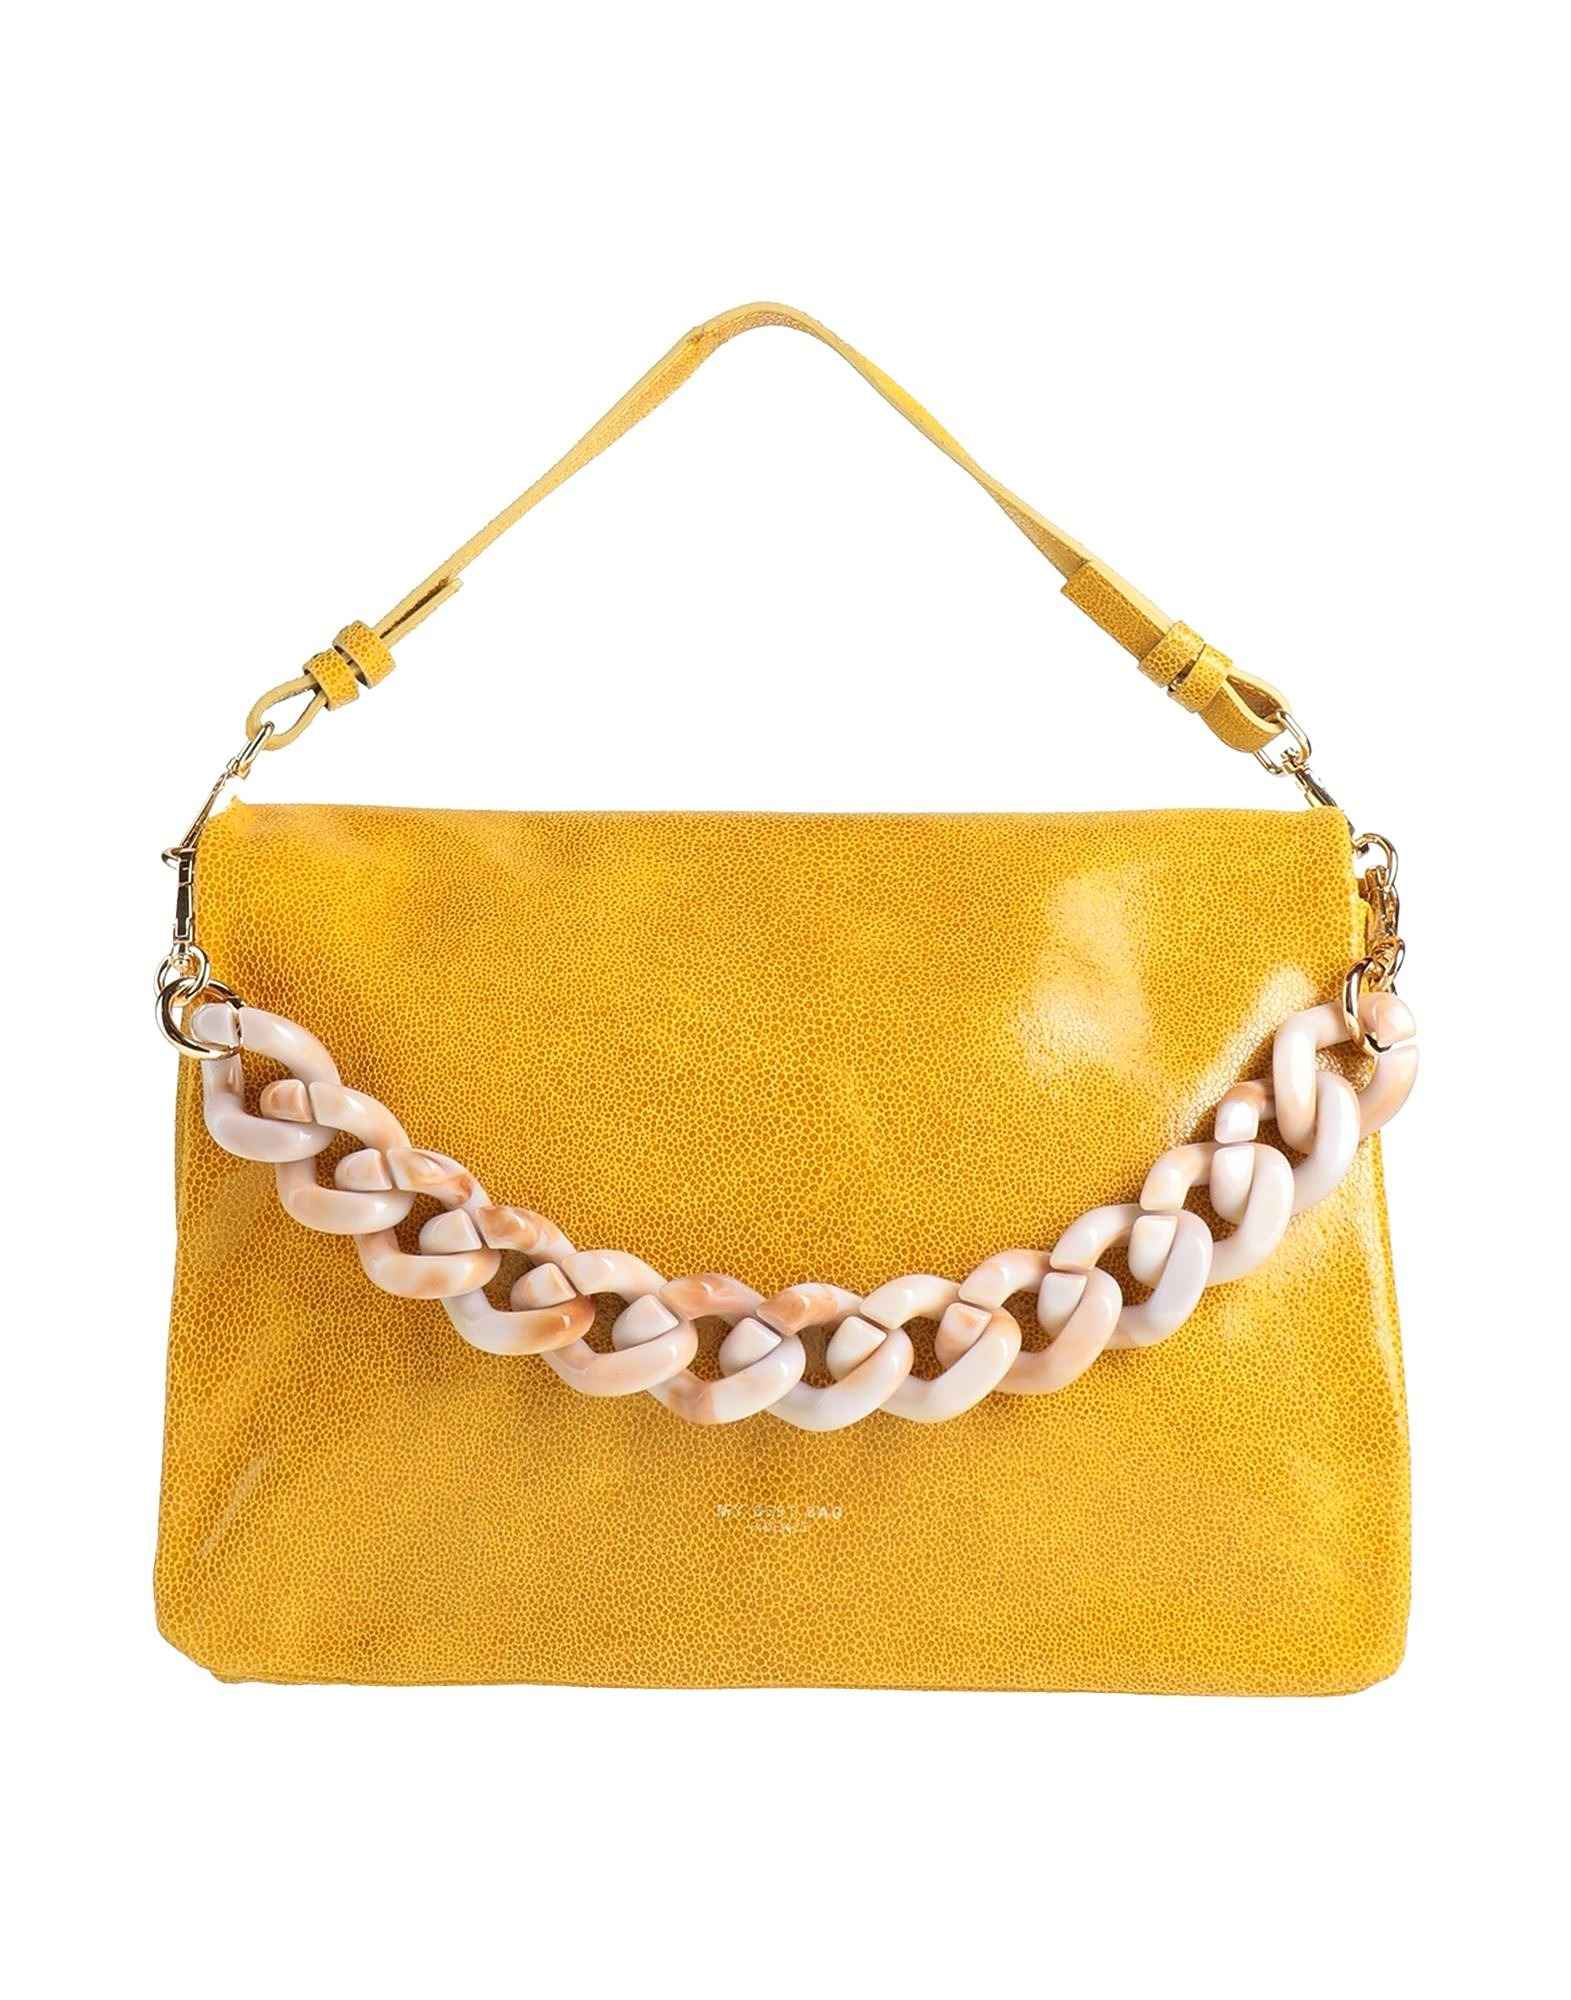 плетеная коробка с кисточками и соломенная сумка с лоскутным клапаном контрастного цвета и веревочным ремнем для женщин коричневый Сумка My-Best Bags, горчичный